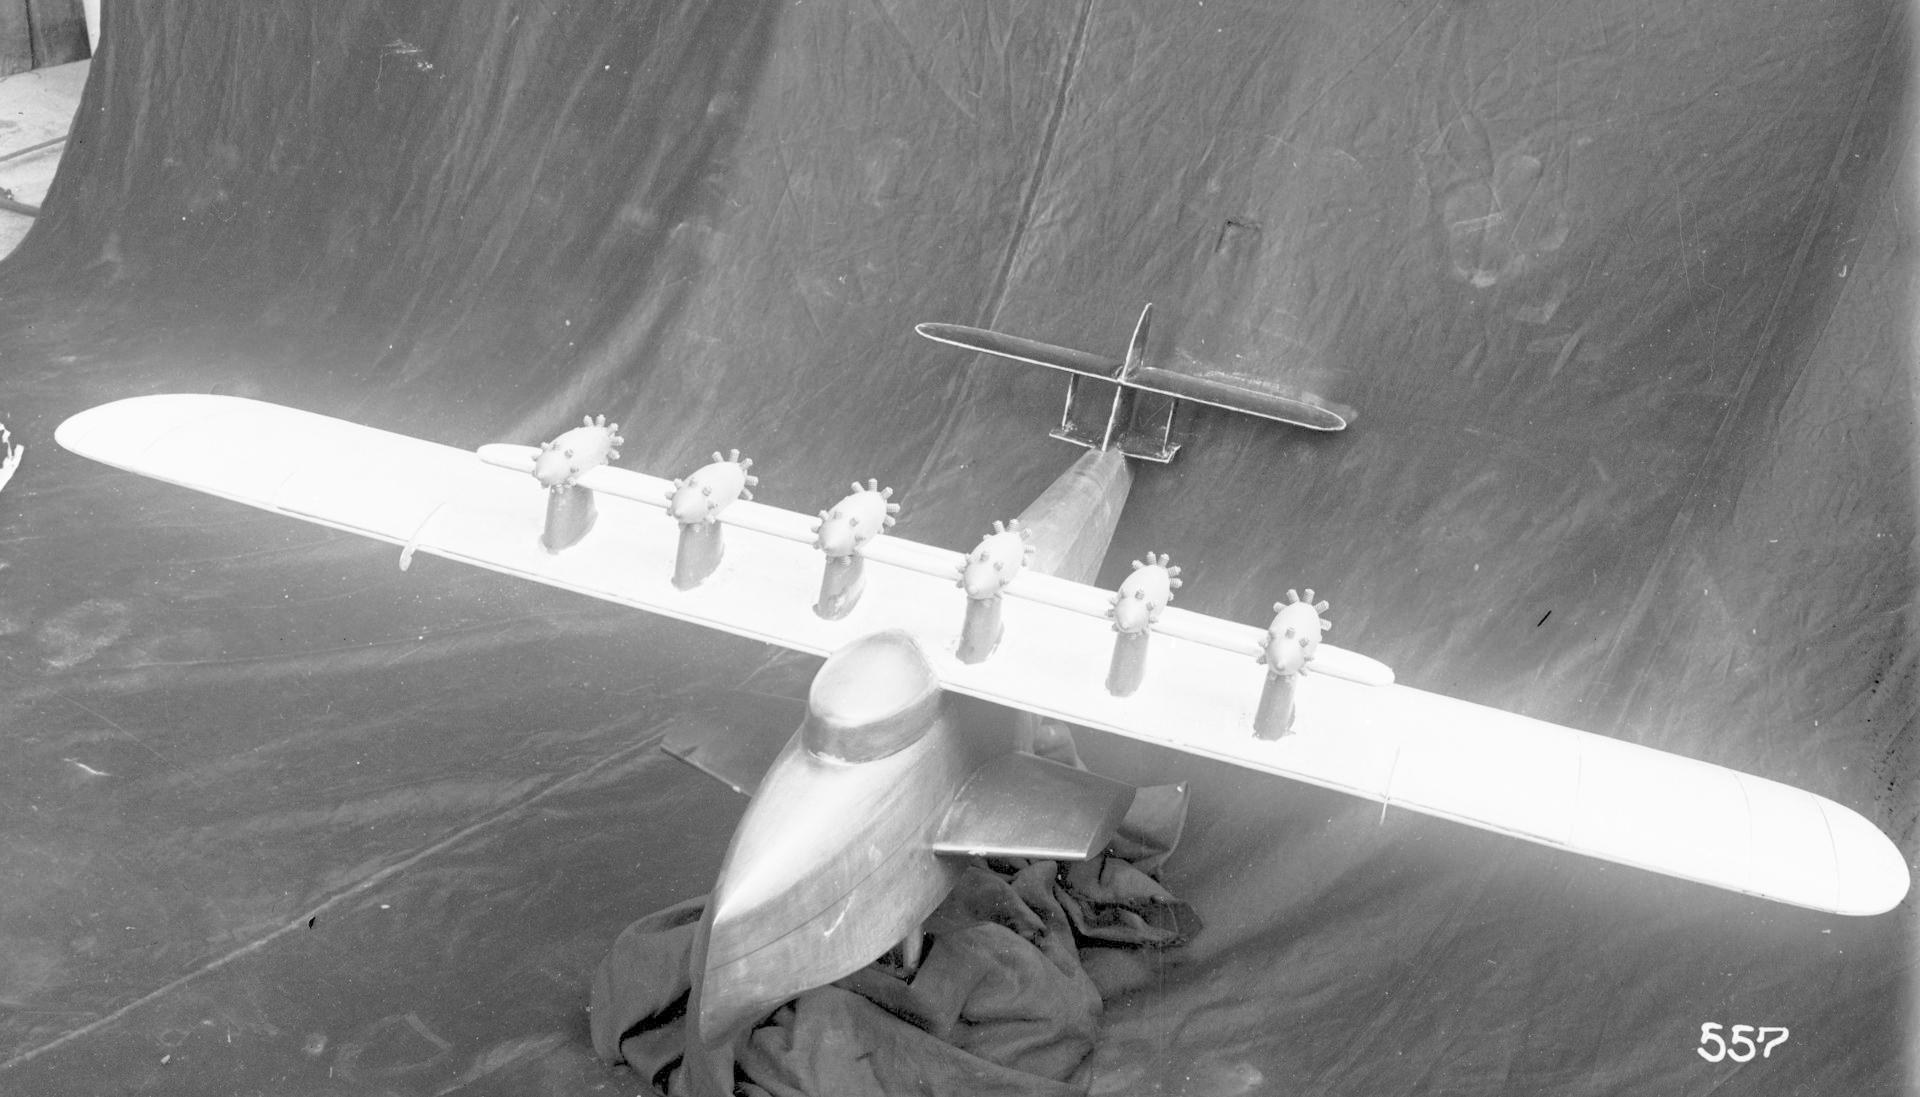 Riesenflugboot als Mini-Modell im Windkanal